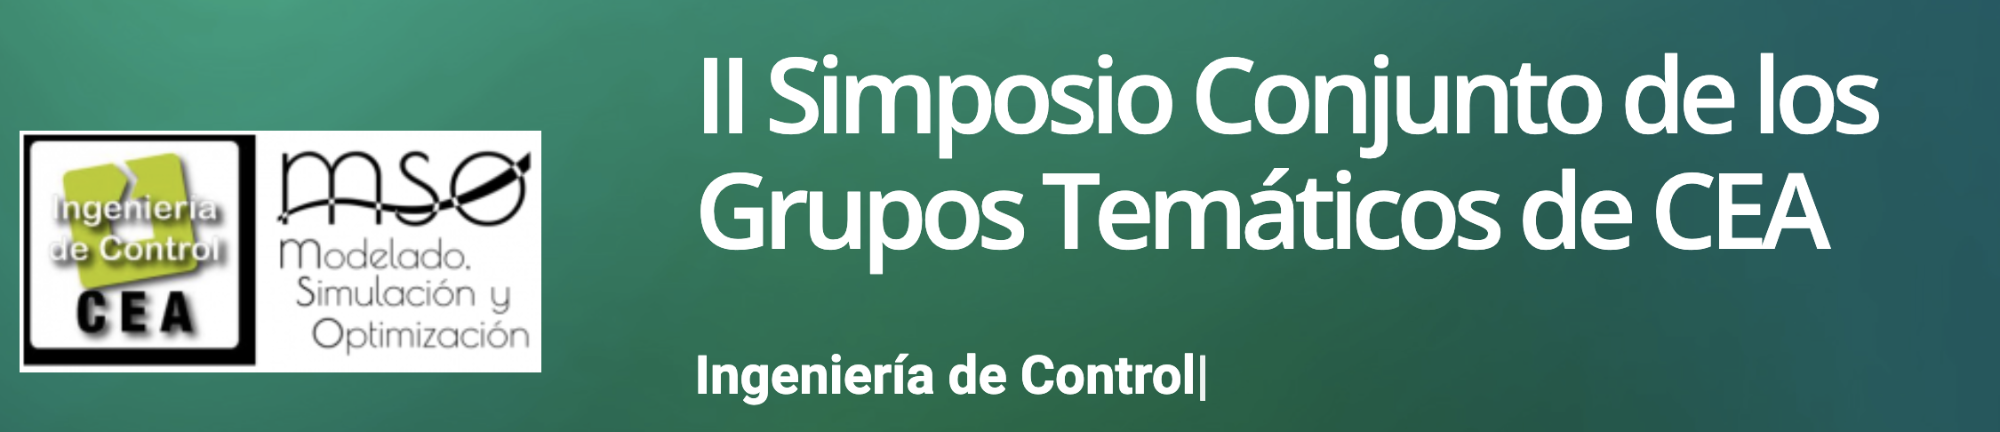 II Simposio Conjunto Grupos Temáticos CEA Ingeniería de Control y Modelado, Simulación y Optimización